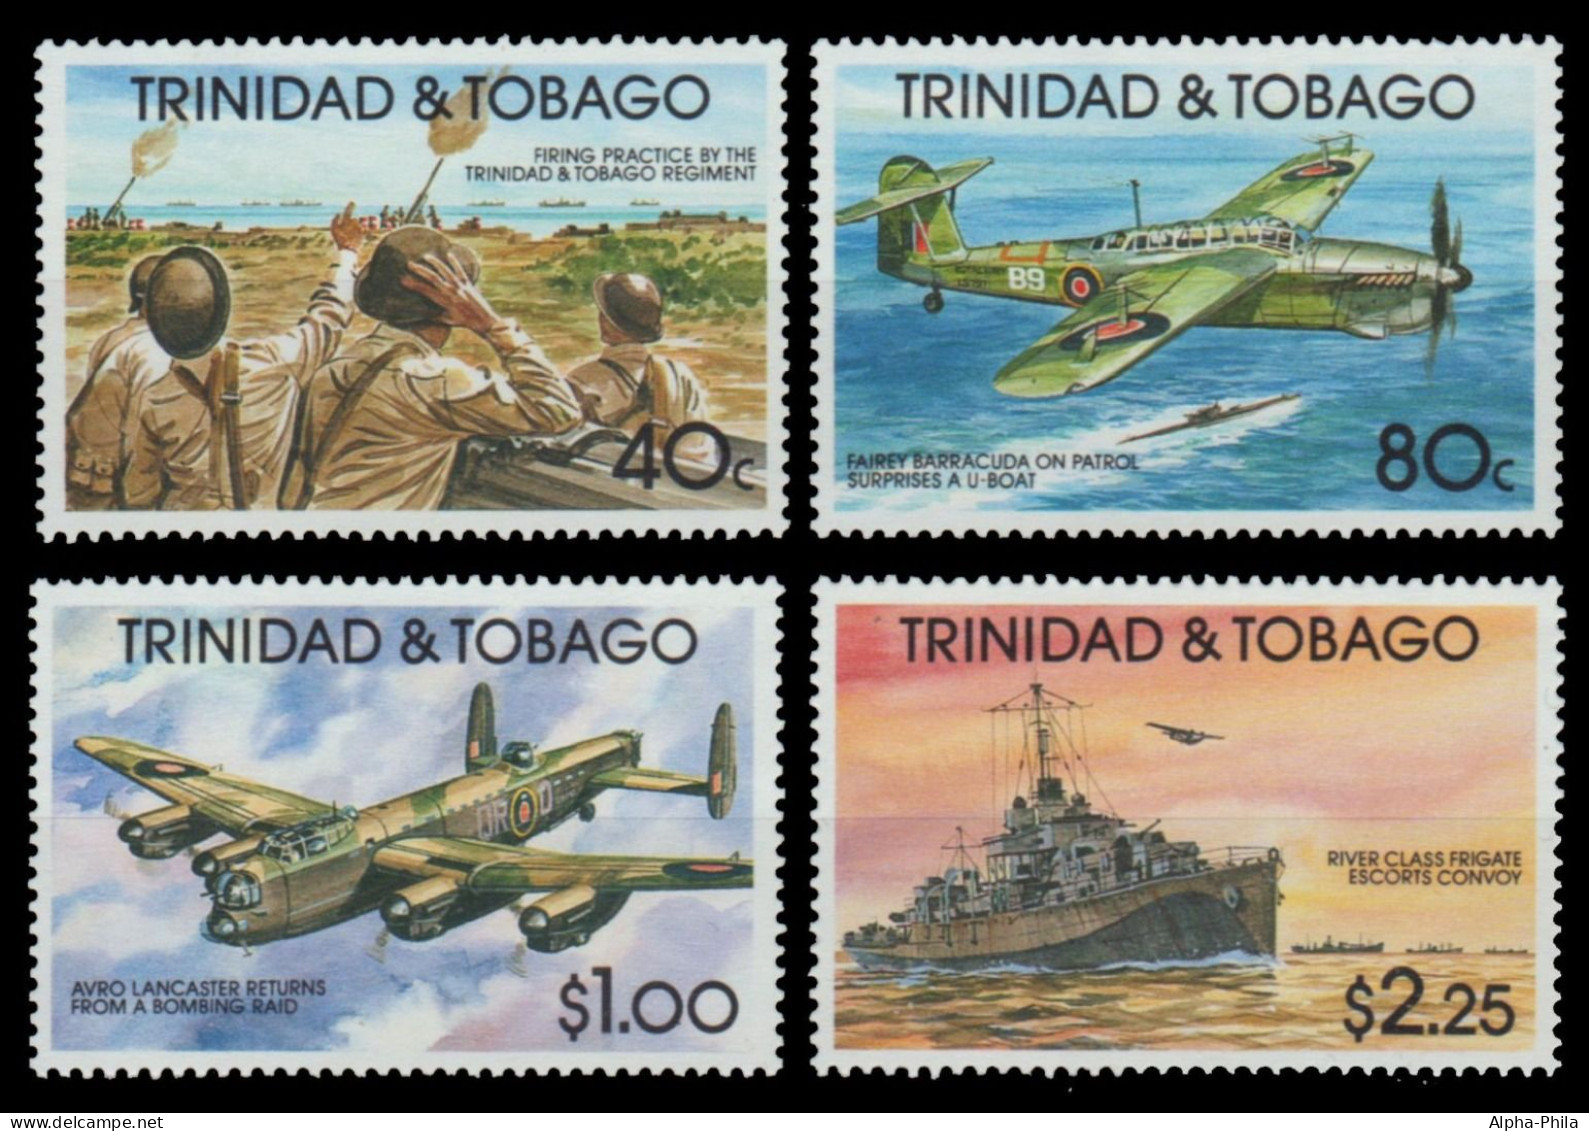 Trinidad & Tobago 1991 - Mi-Nr. 625-628 ** - MNH - Flugzeuge / Airplanes - Trinidad & Tobago (1962-...)